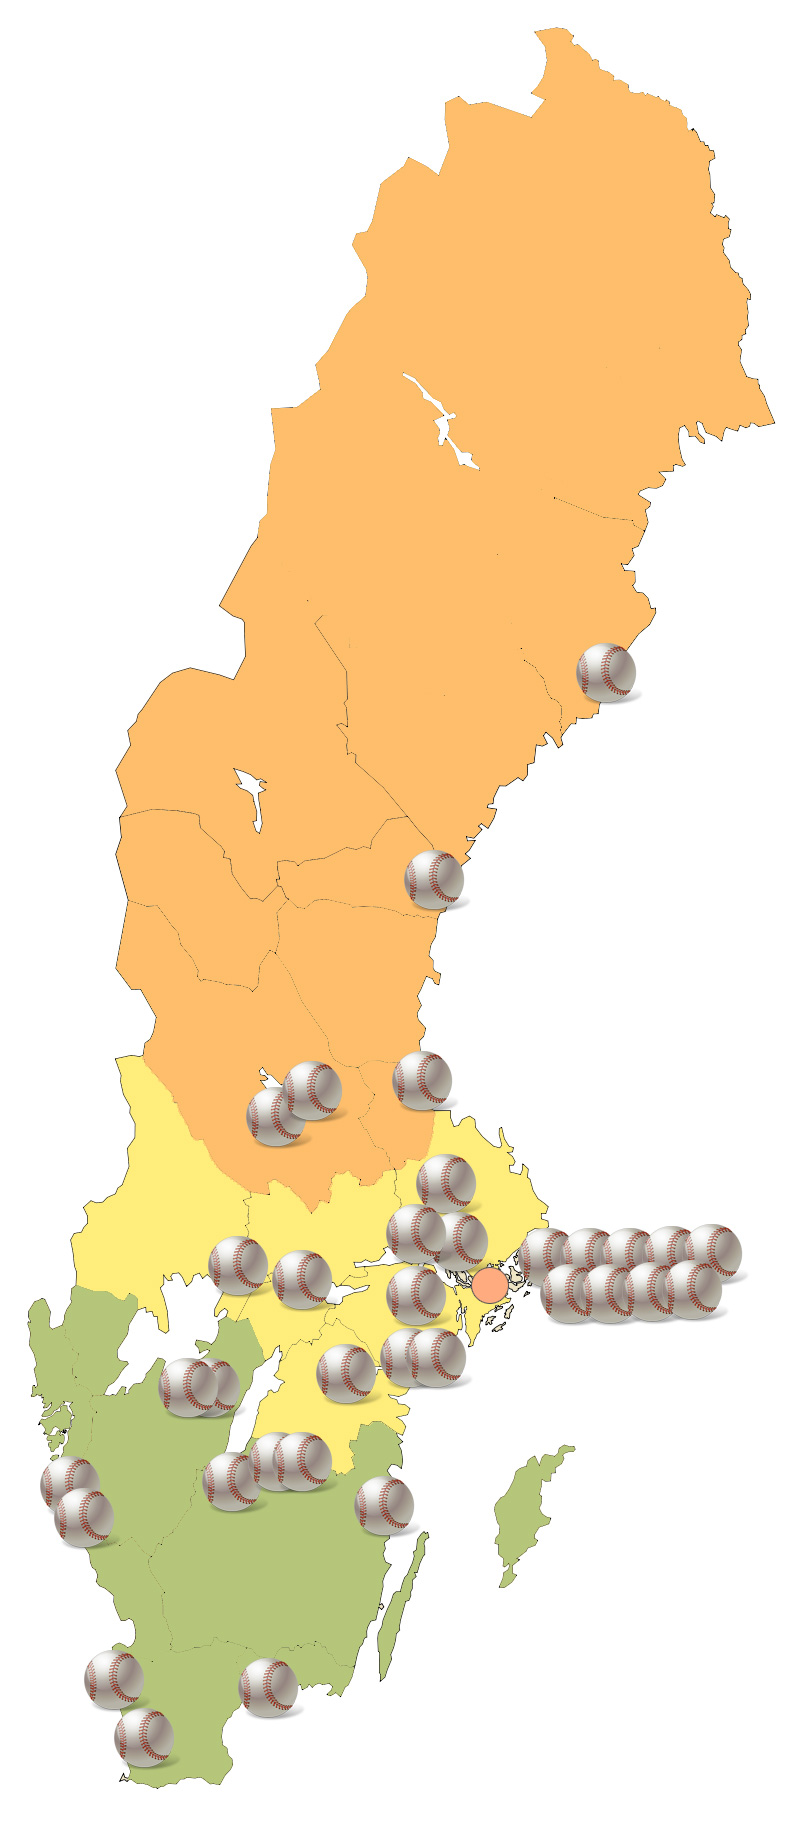 Sammanfattning Förbundsstyrelsen föreslår att SBSF förändrar sin SDF-struktur enligt följande: Norra Norrland, Mellersta Norrland, och Dalarna/Gävleborg slås samman till Norra Baseboll och Softboll